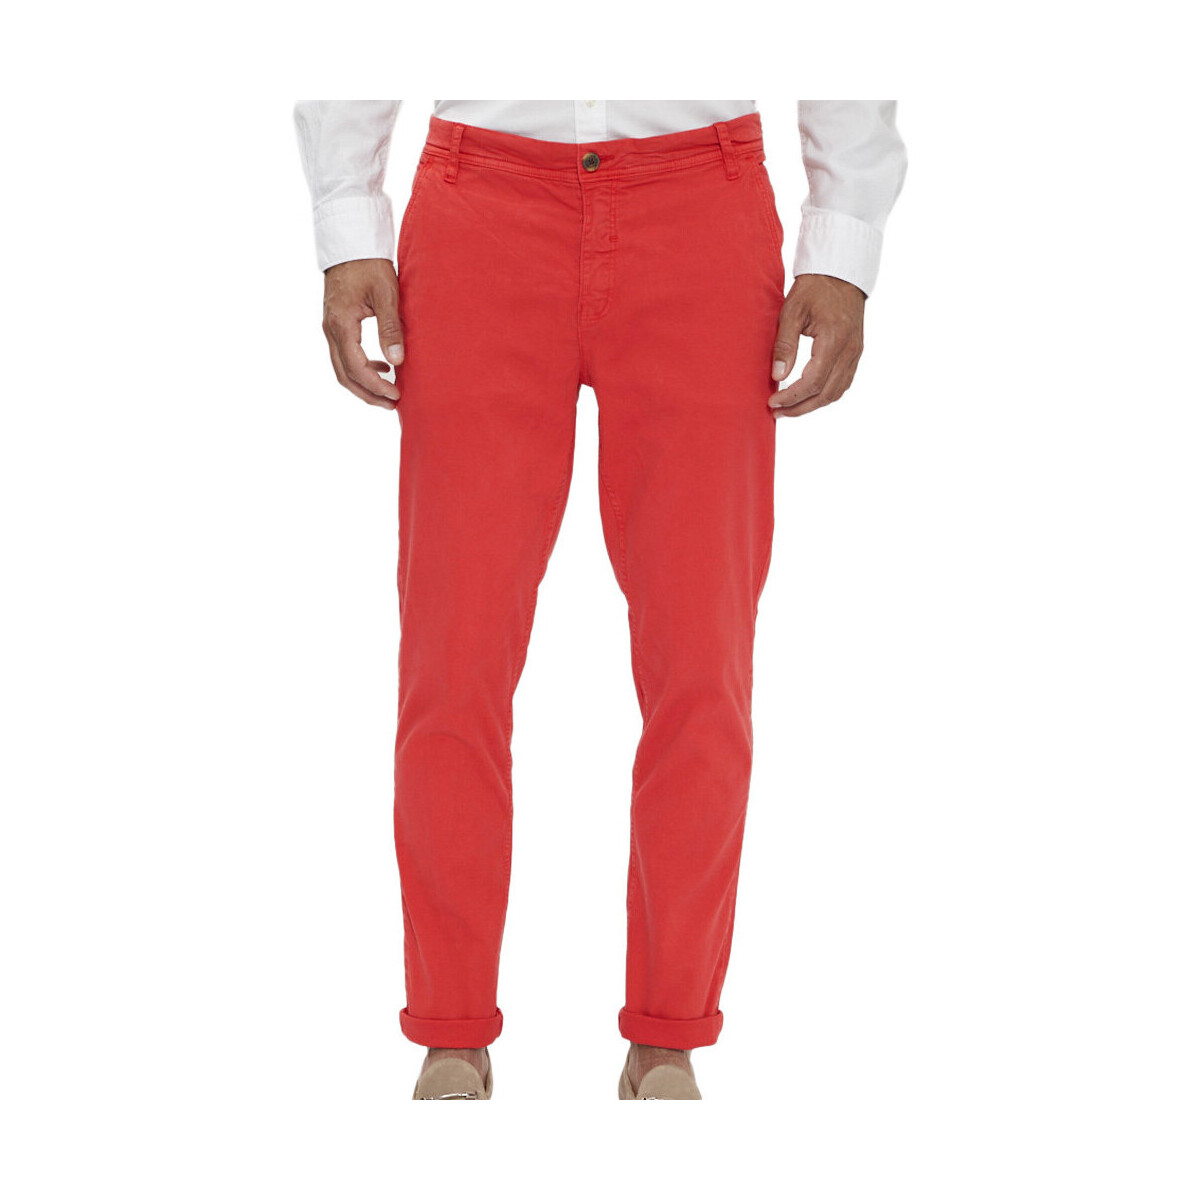 Vêtements Homme ou tour de hanches se mesure à lendroit le plus fort PB-COSTA 2 Rouge